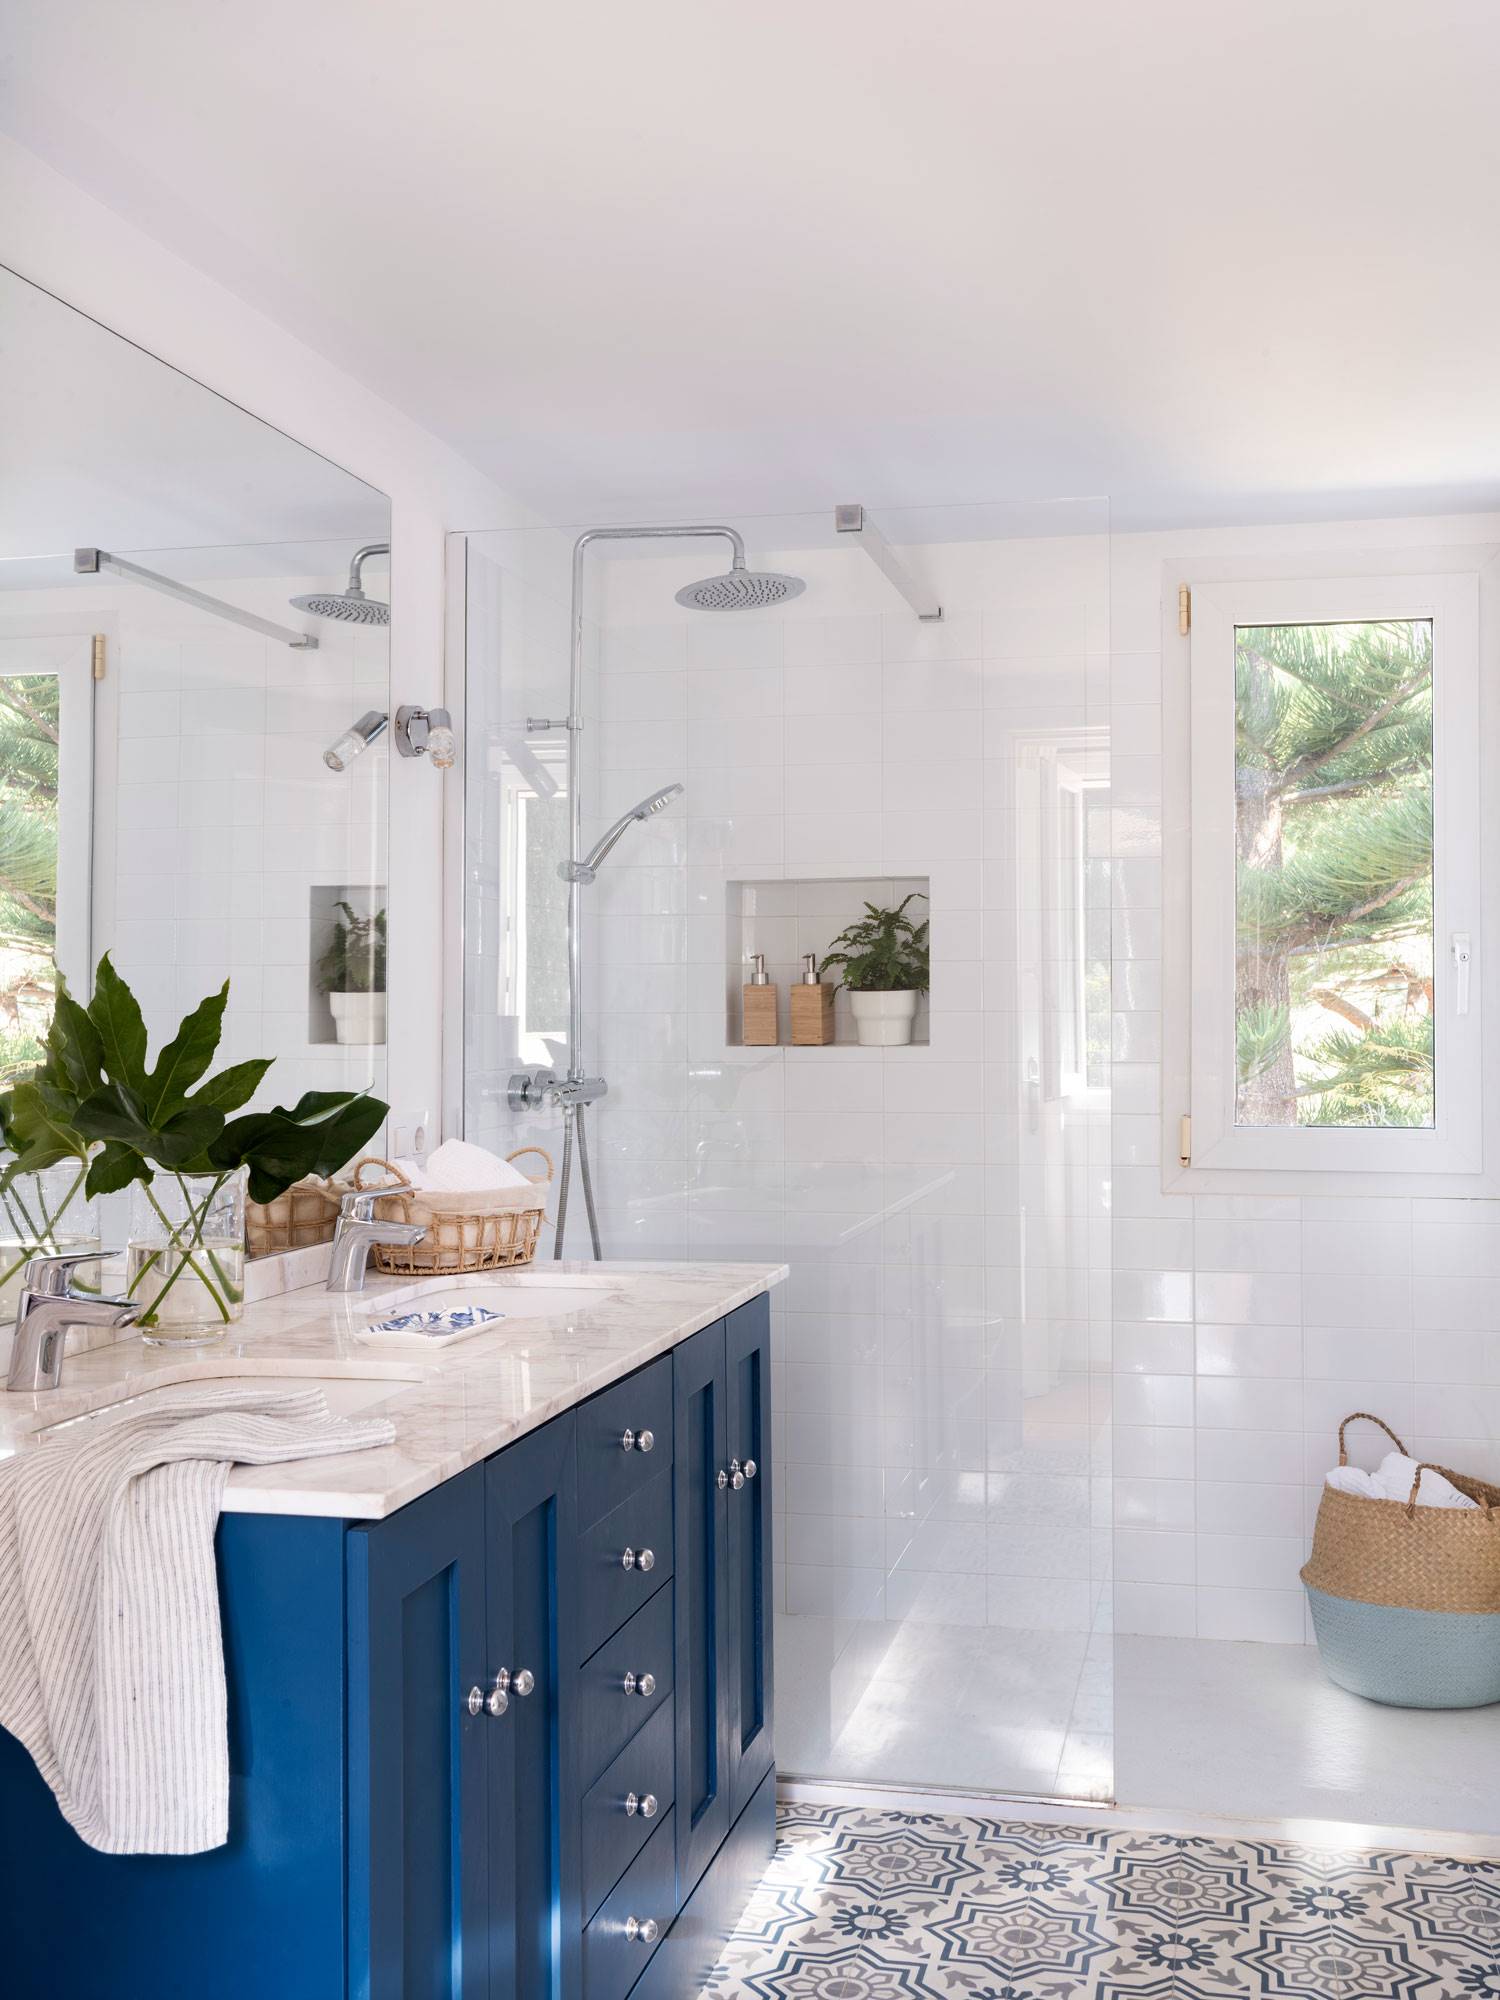 Muebles del baño pintados en color azul y mampara transparente.